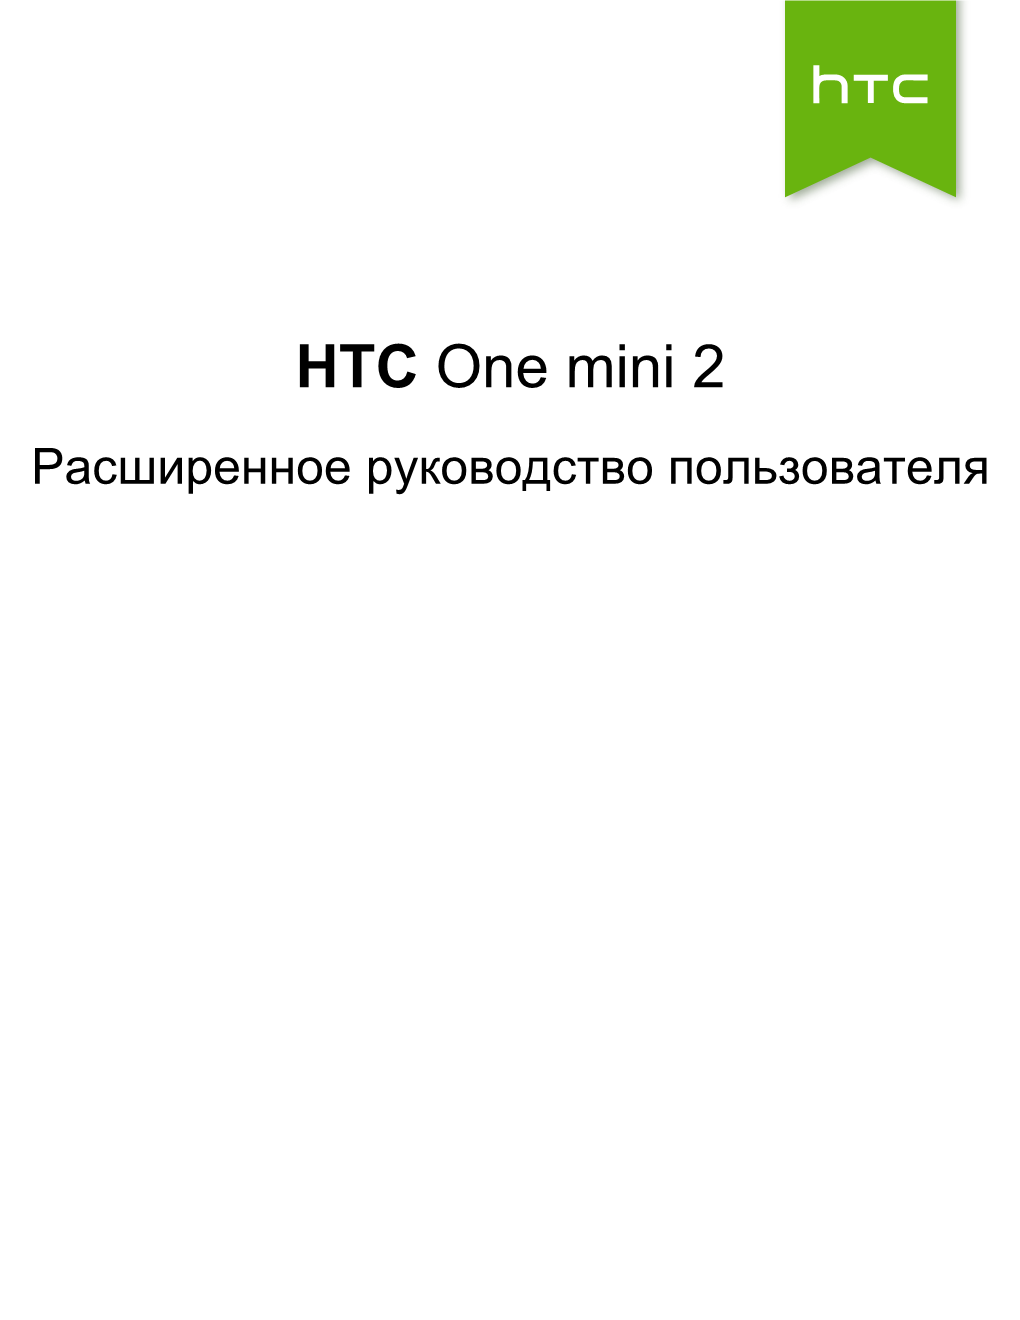 HTC One Mini 2 Расширенное Руководство Пользователя 2 Содержание Содержание